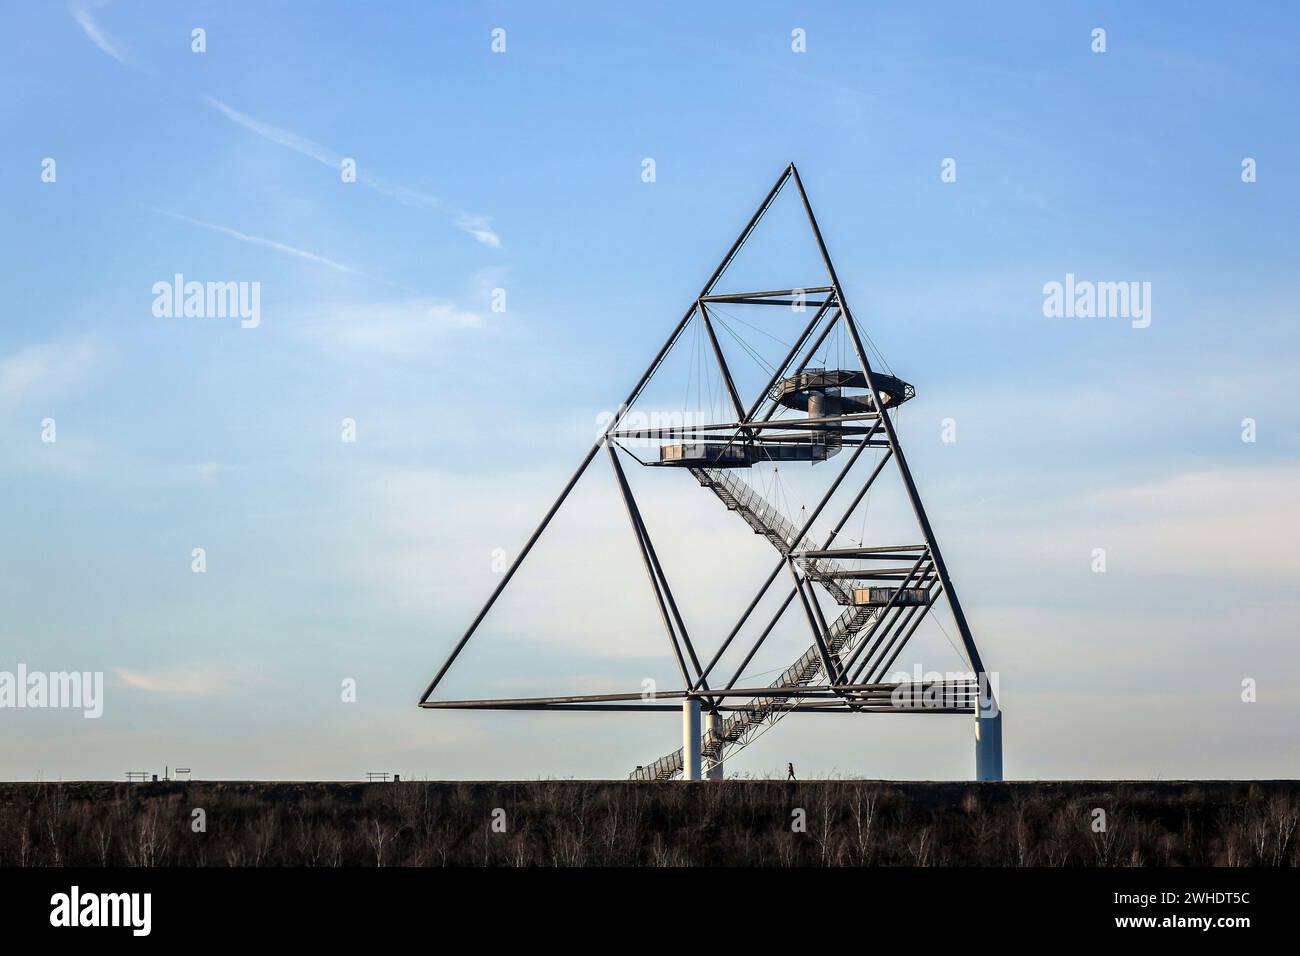 Bottrop, Nordrhein-Westfalen, Deutschland - Tetraeder, das Emscherblick-Turnier, ist eine zugängliche Aussichtsterrasse in Form einer dreiseitigen Pyramide an der Beckstraße im Stadtteil Bottrop Batenbrock. Stockfoto